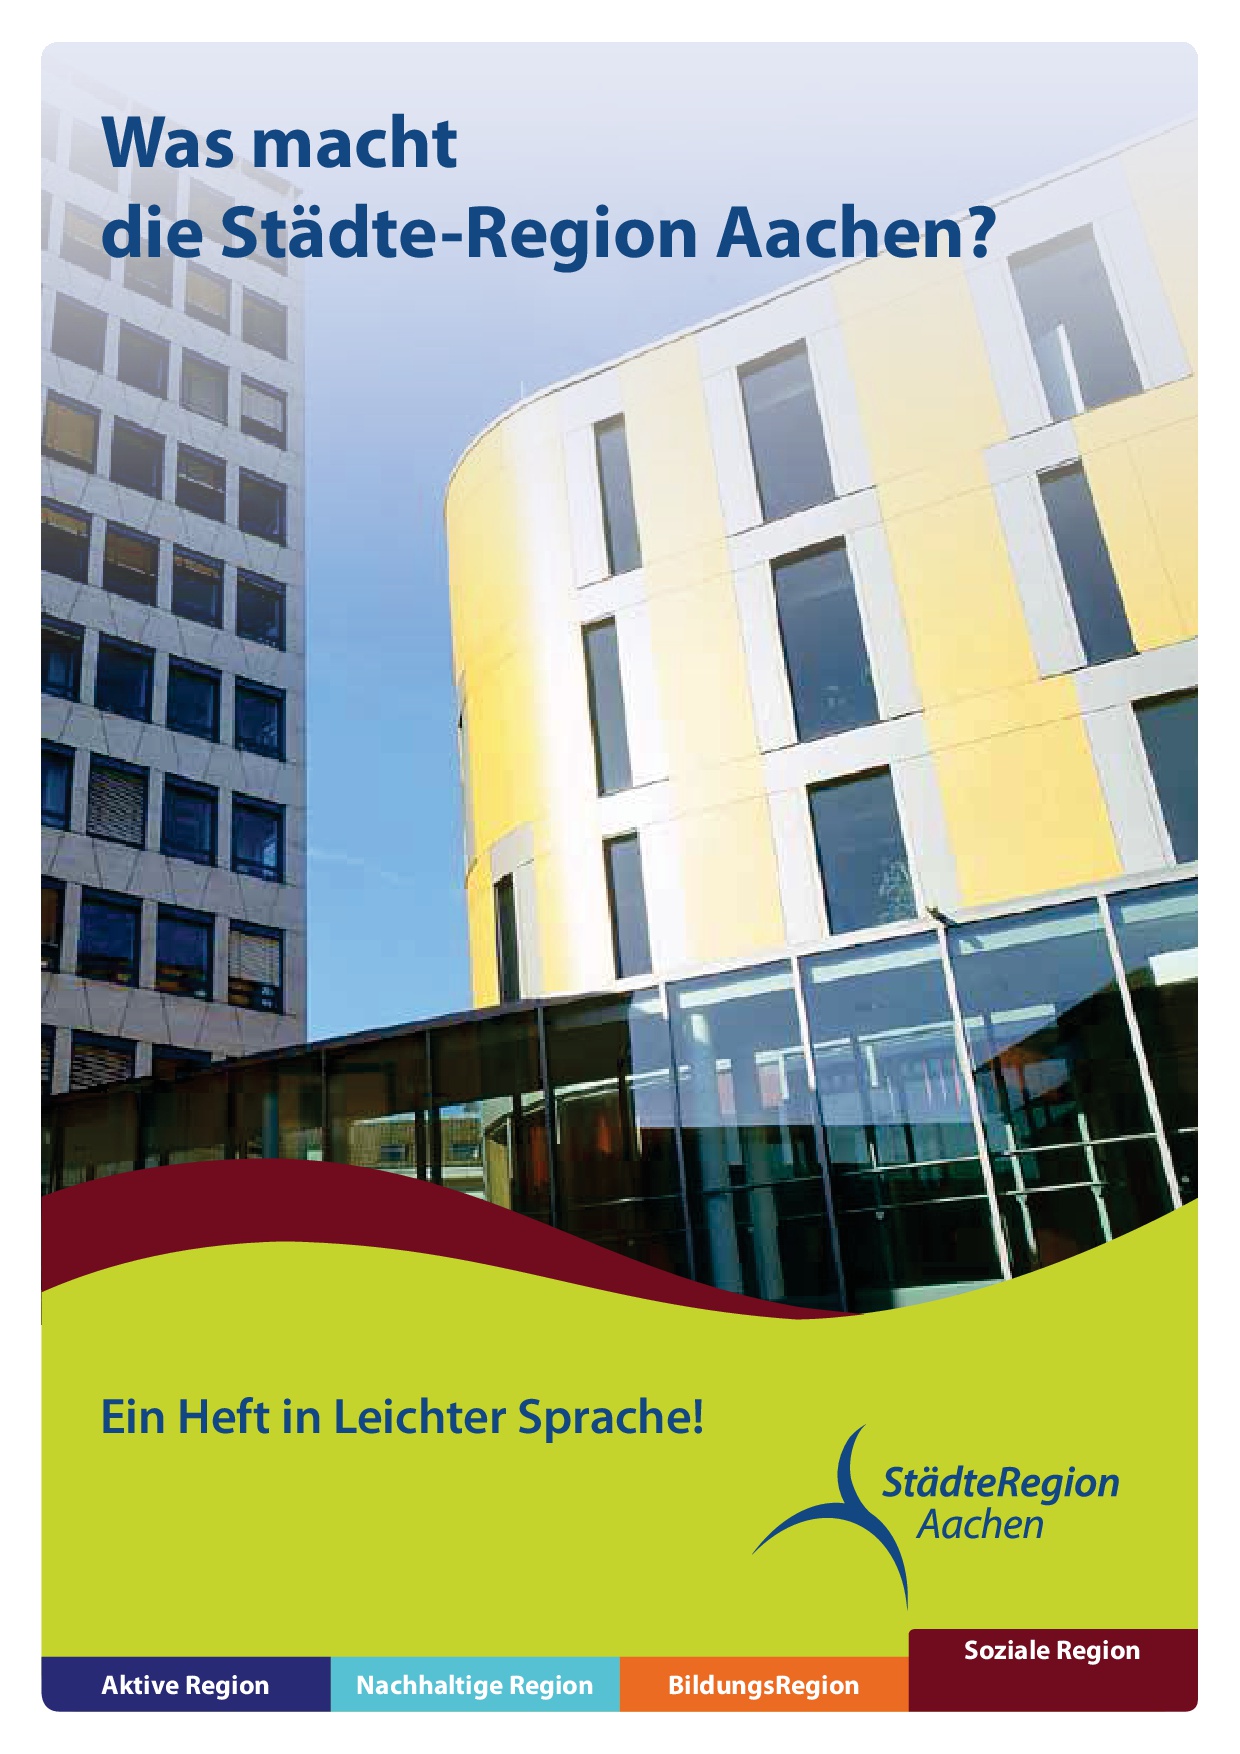 Deckblatt der Broschüre "Was macht die Städt-Region Aachen?"